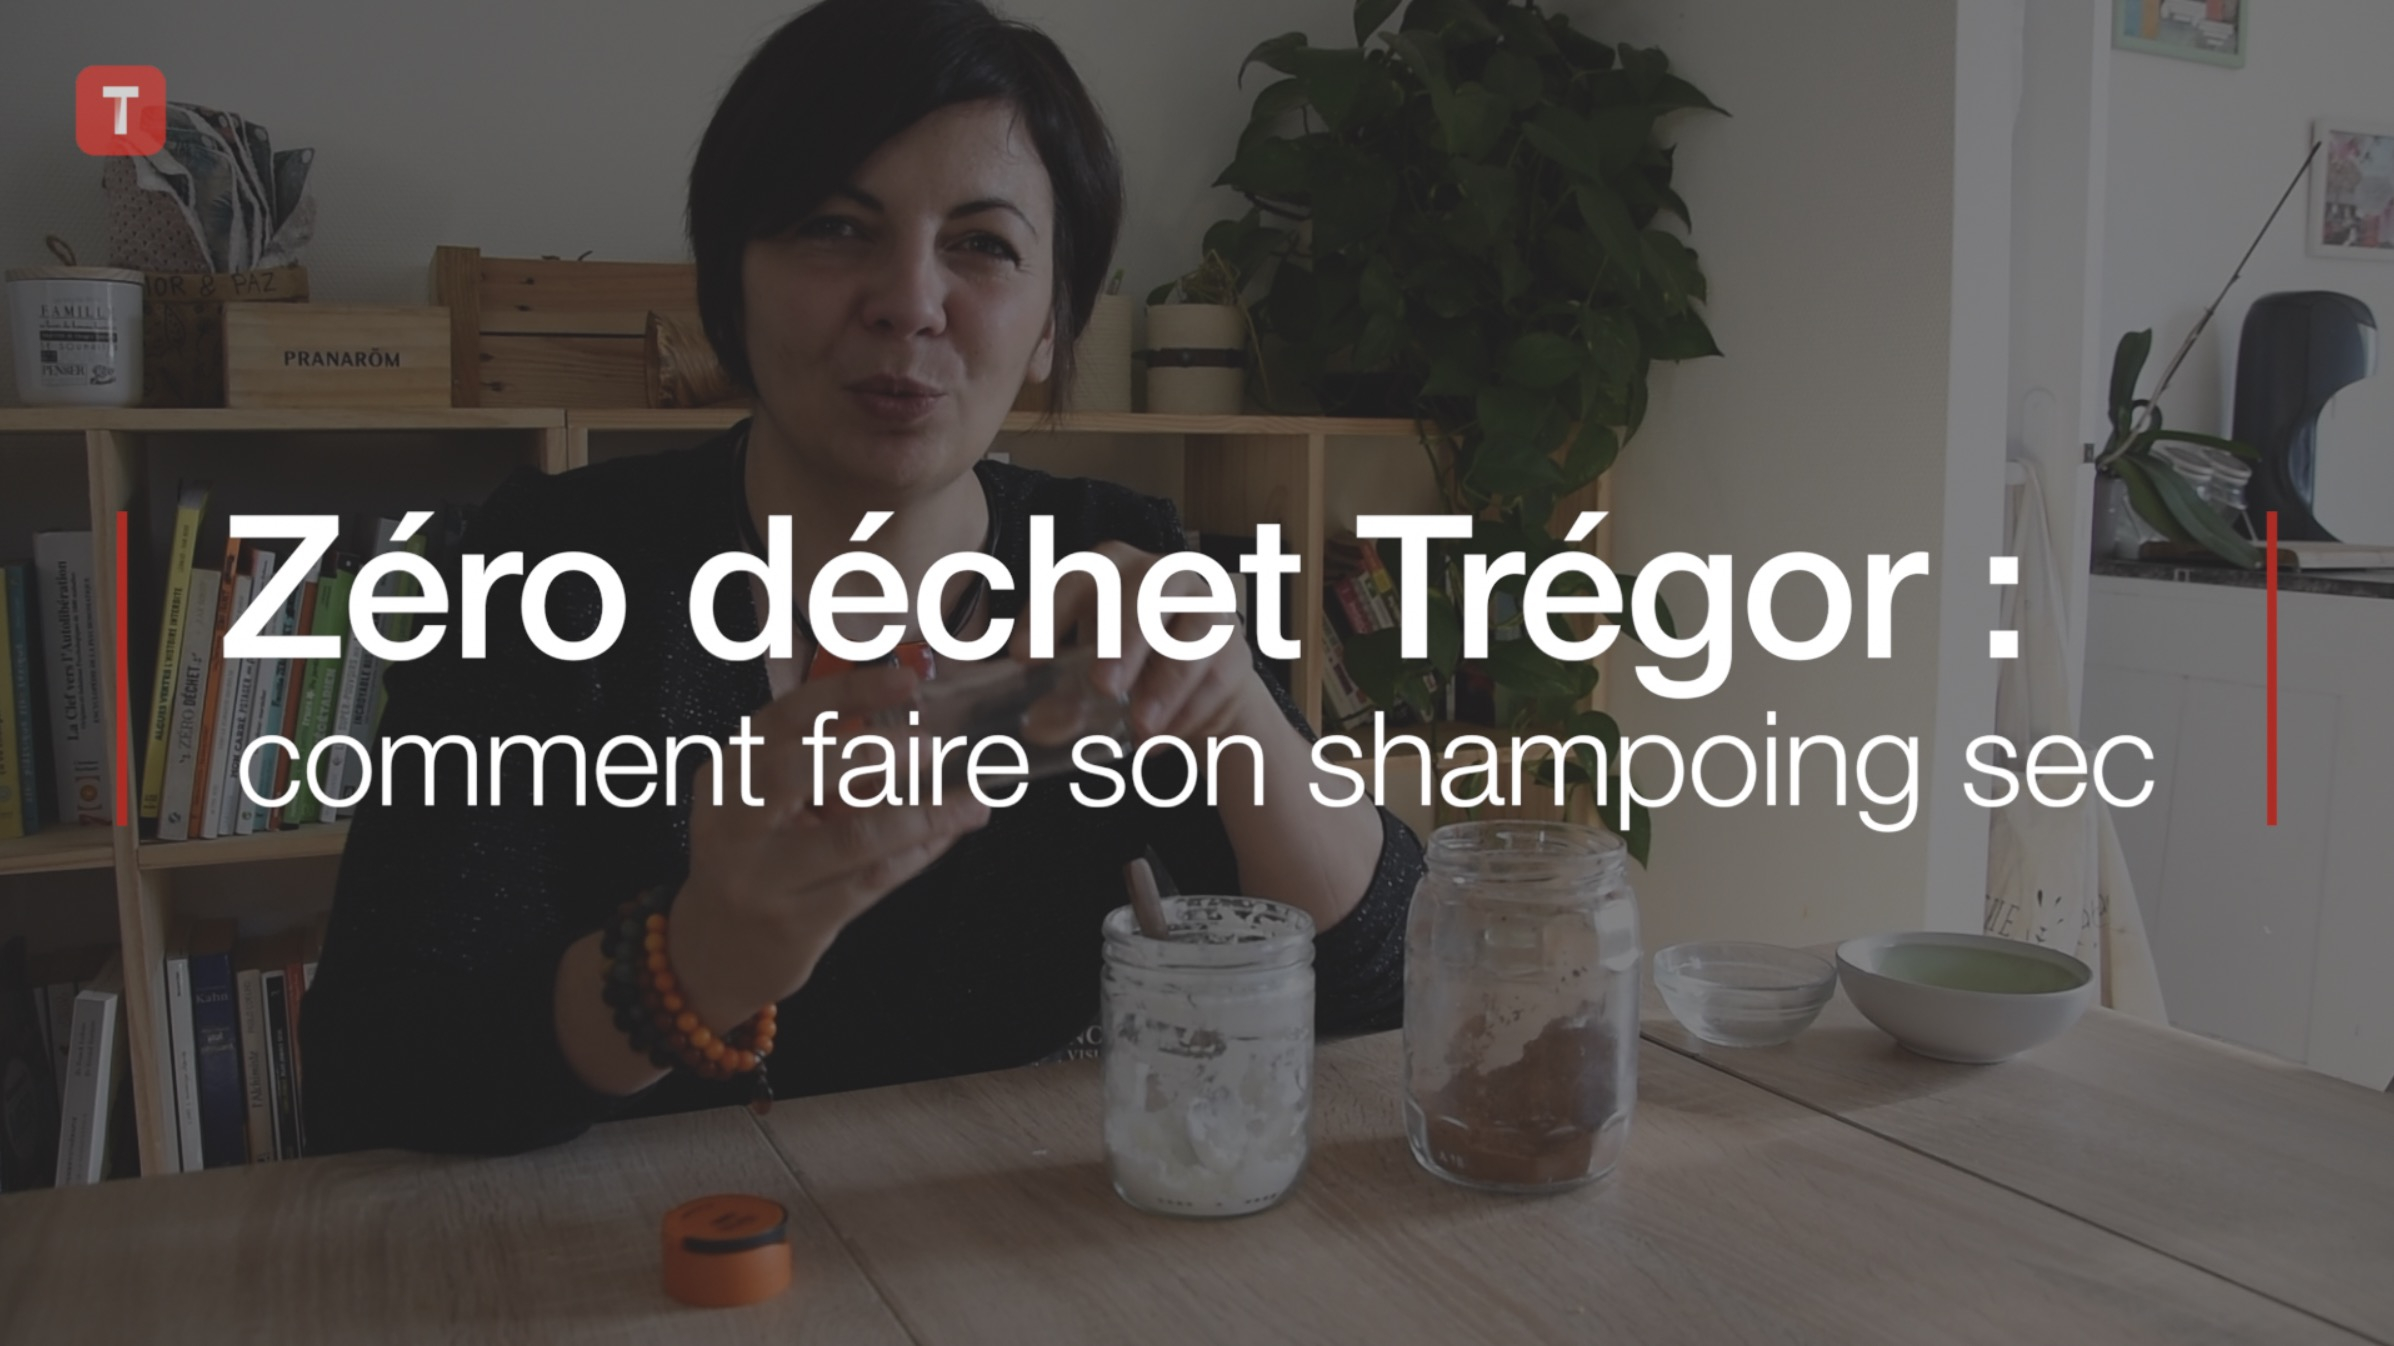 Zéro déchet Trégor : comment faire son shampoing sec ? (Le Télégramme)